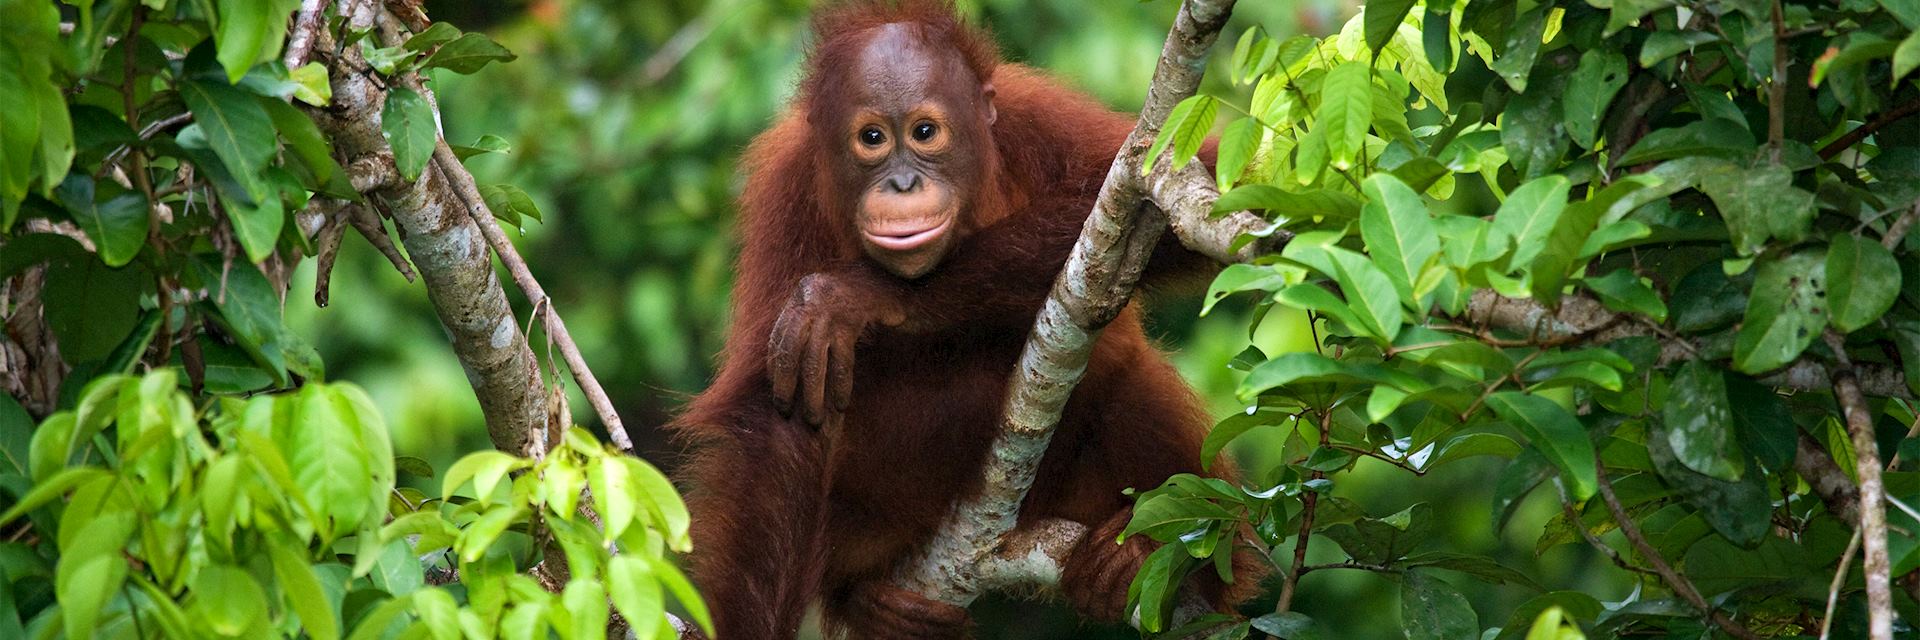 A baby orangutan in the wild